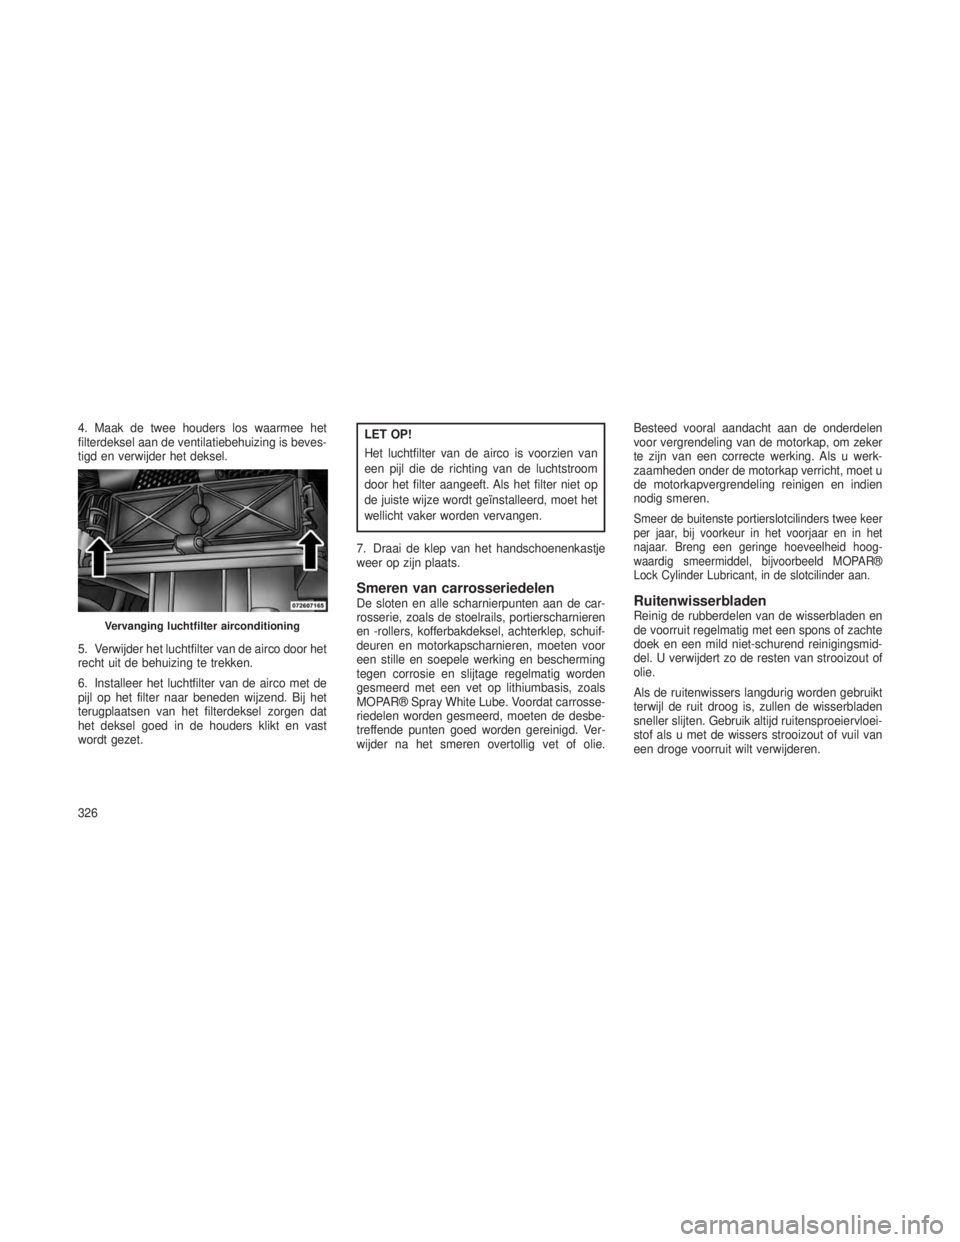 JEEP GRAND CHEROKEE 2013  Instructieboek (in Dutch) 4. Maak de twee houders los waarmee het
filterdeksel aan de ventilatiebehuizing is beves-
tigd en verwijder het deksel.
5. Verwijder het luchtfilter van de airco door het
recht uit de behuizing te tre